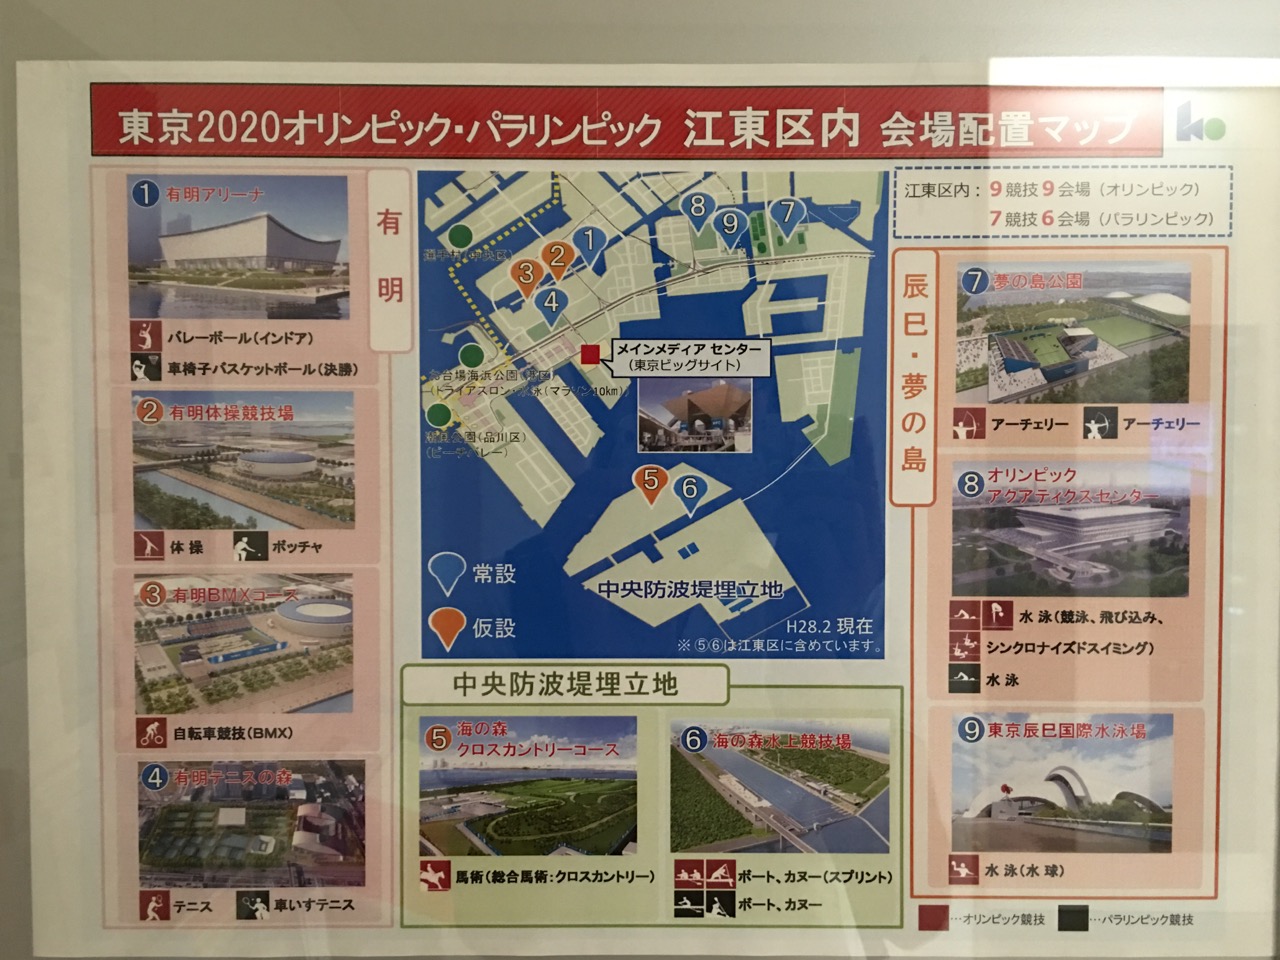 2020年の東京オリンピック・パラリンピック、江東区で予定されている会場